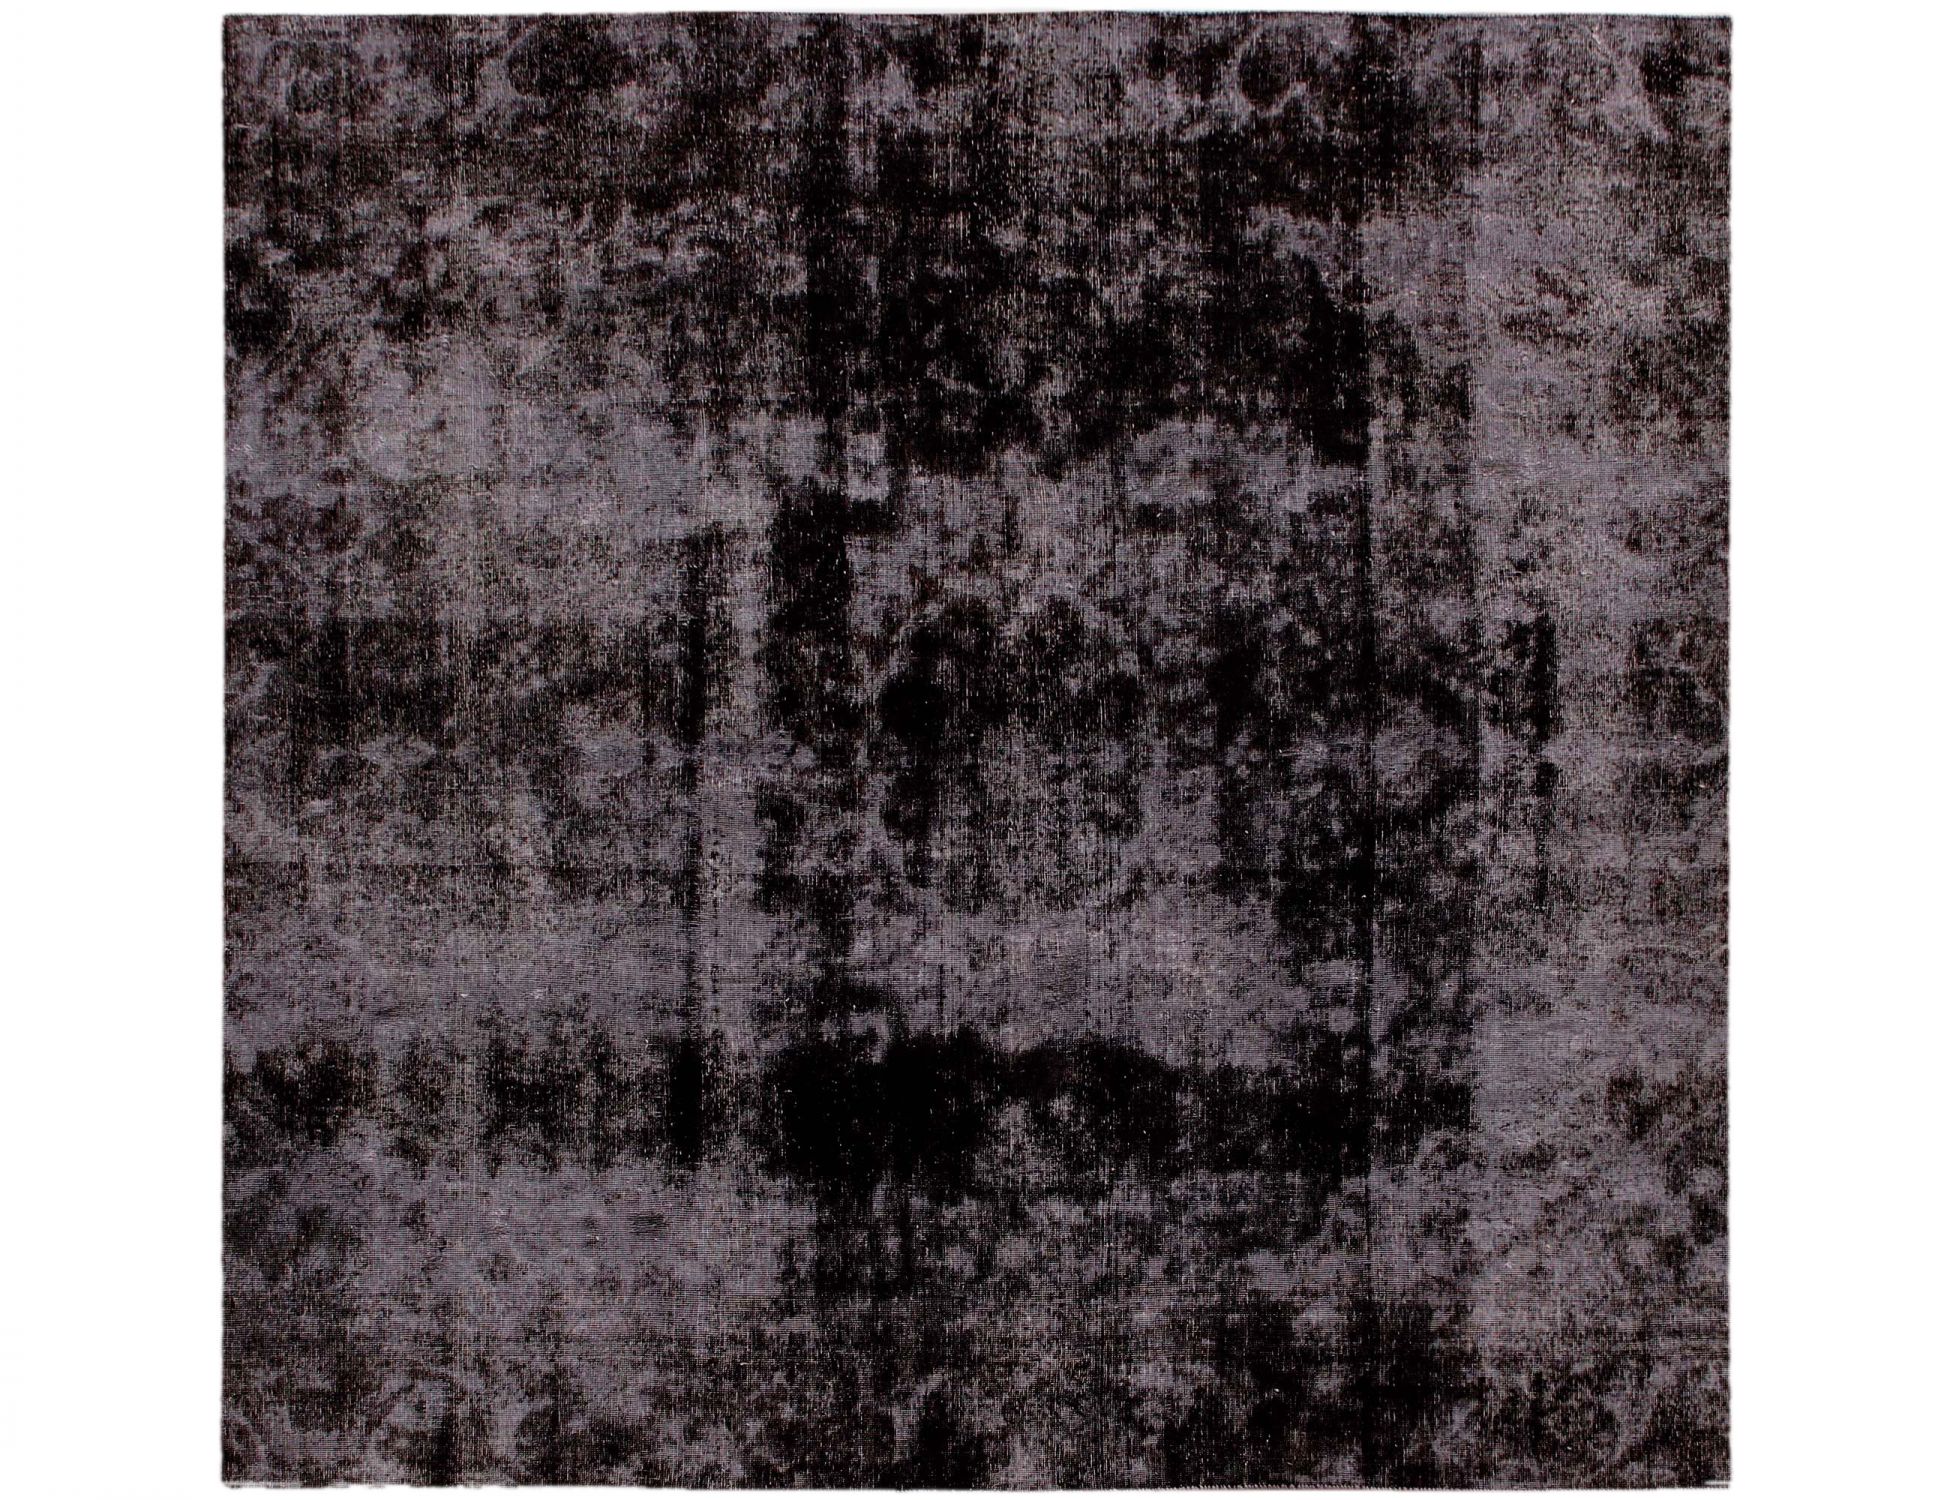 Persischer Vintage Teppich  schwarz <br/>275 x 275 cm